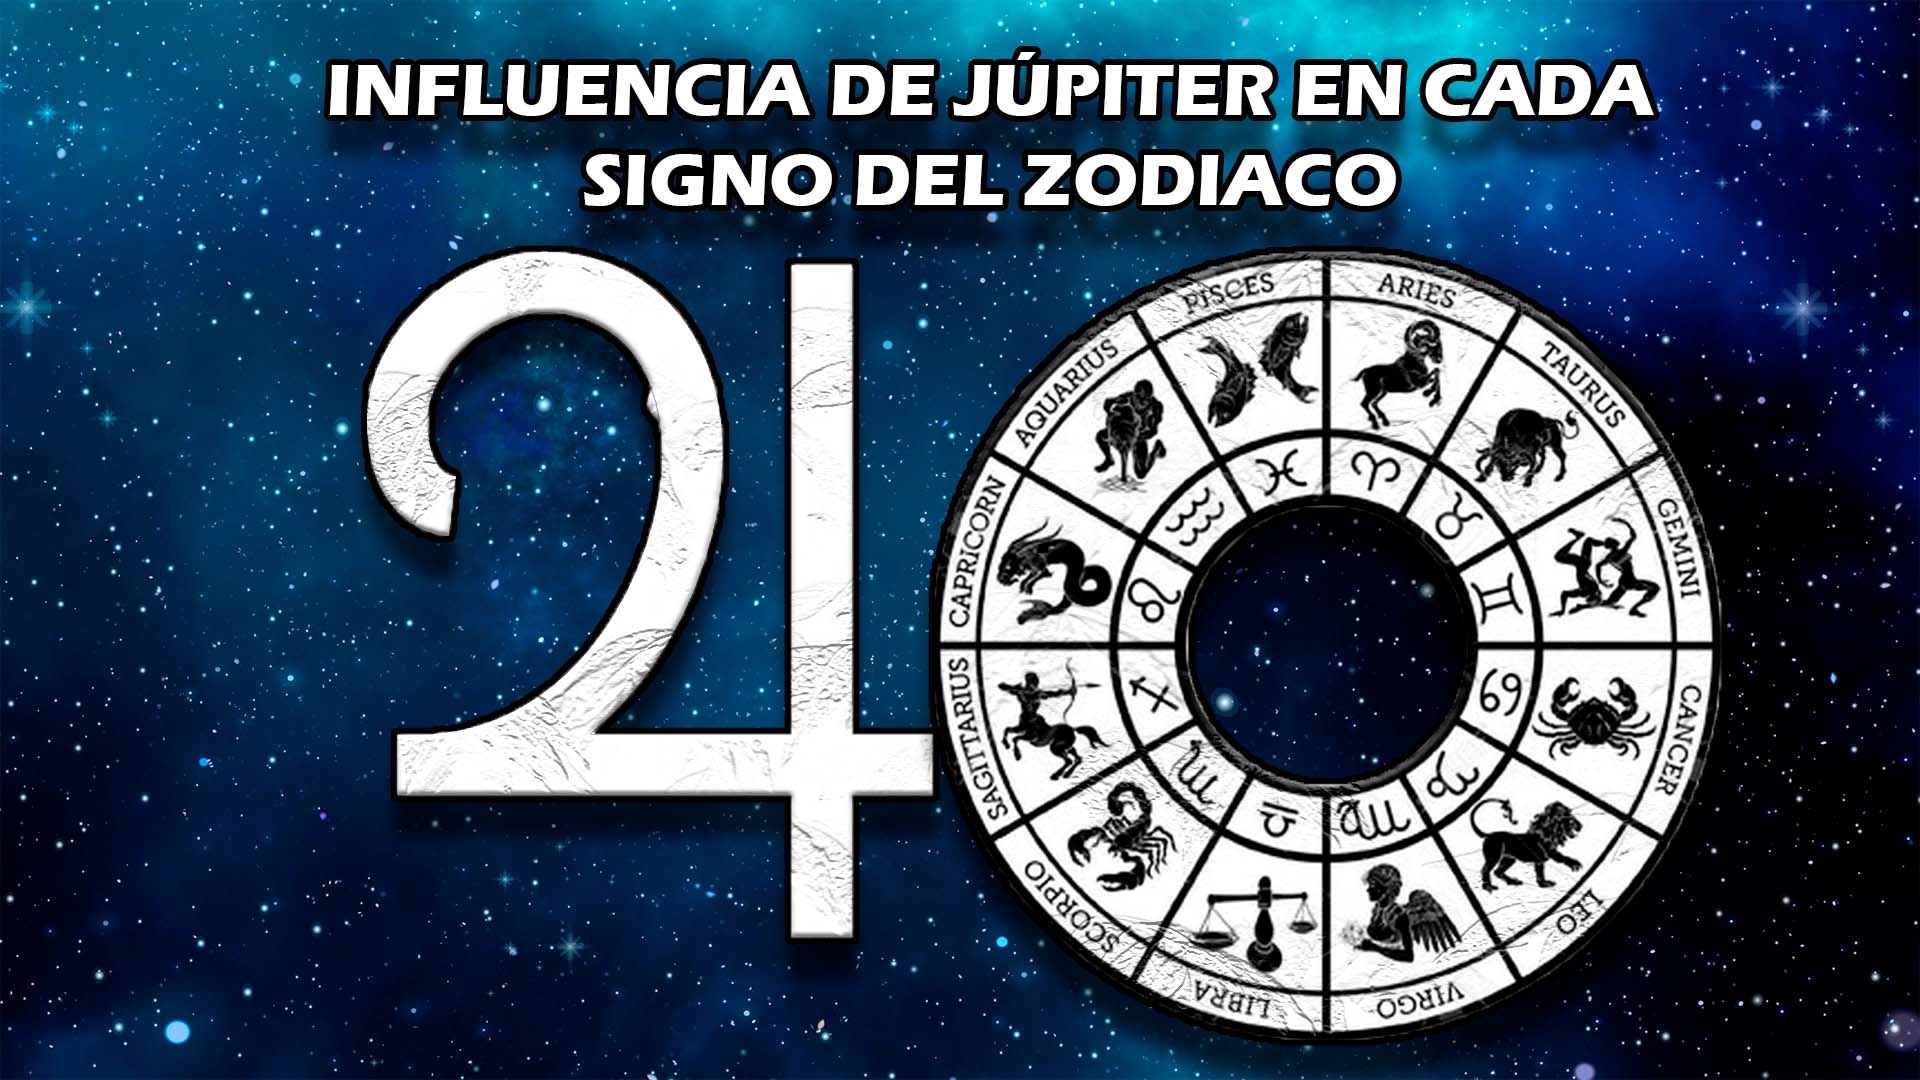 Influencia de Júpiter en cada signo del zodiaco